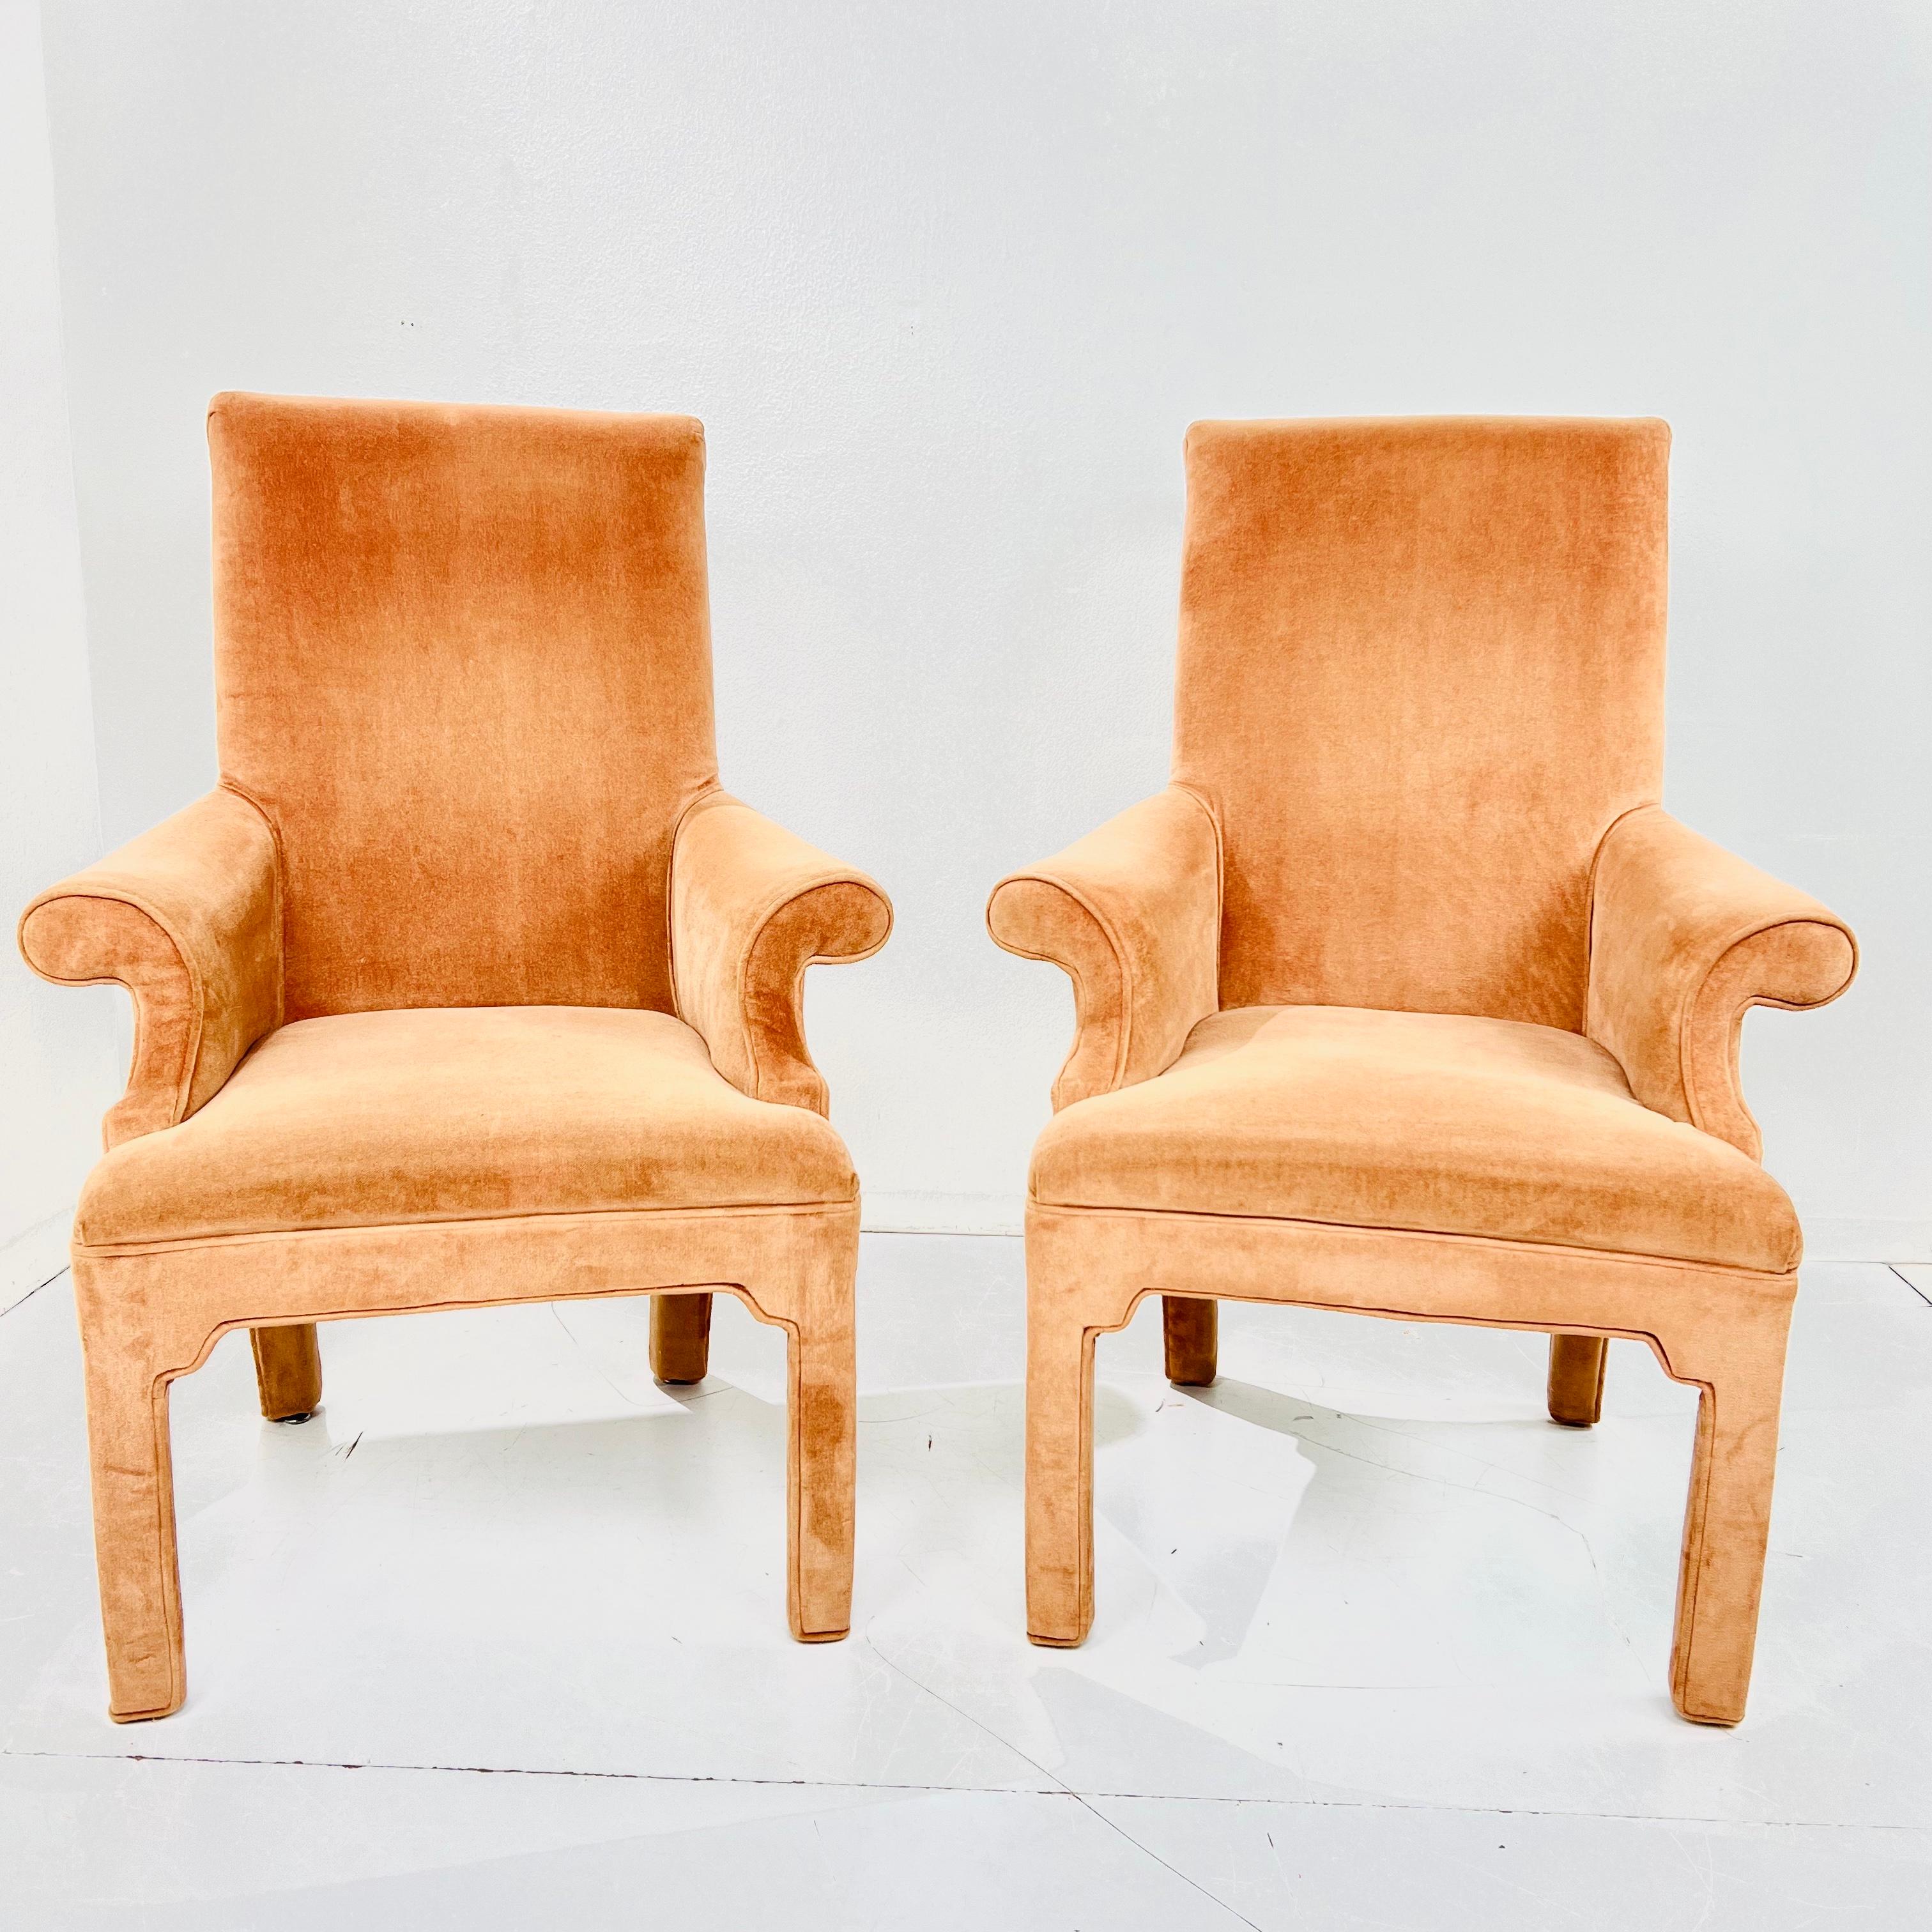 Anspruchsvolles Paar postmoderner Sessel im Stil von Milo Baughman. Das Rollback-Design verleiht den schlichten Parsons-Linien Eleganz, Flair und Bewegung. 
Die Hockersitze sind gepolstert und bequem. Guter struktureller Zustand mit einigen kleinen